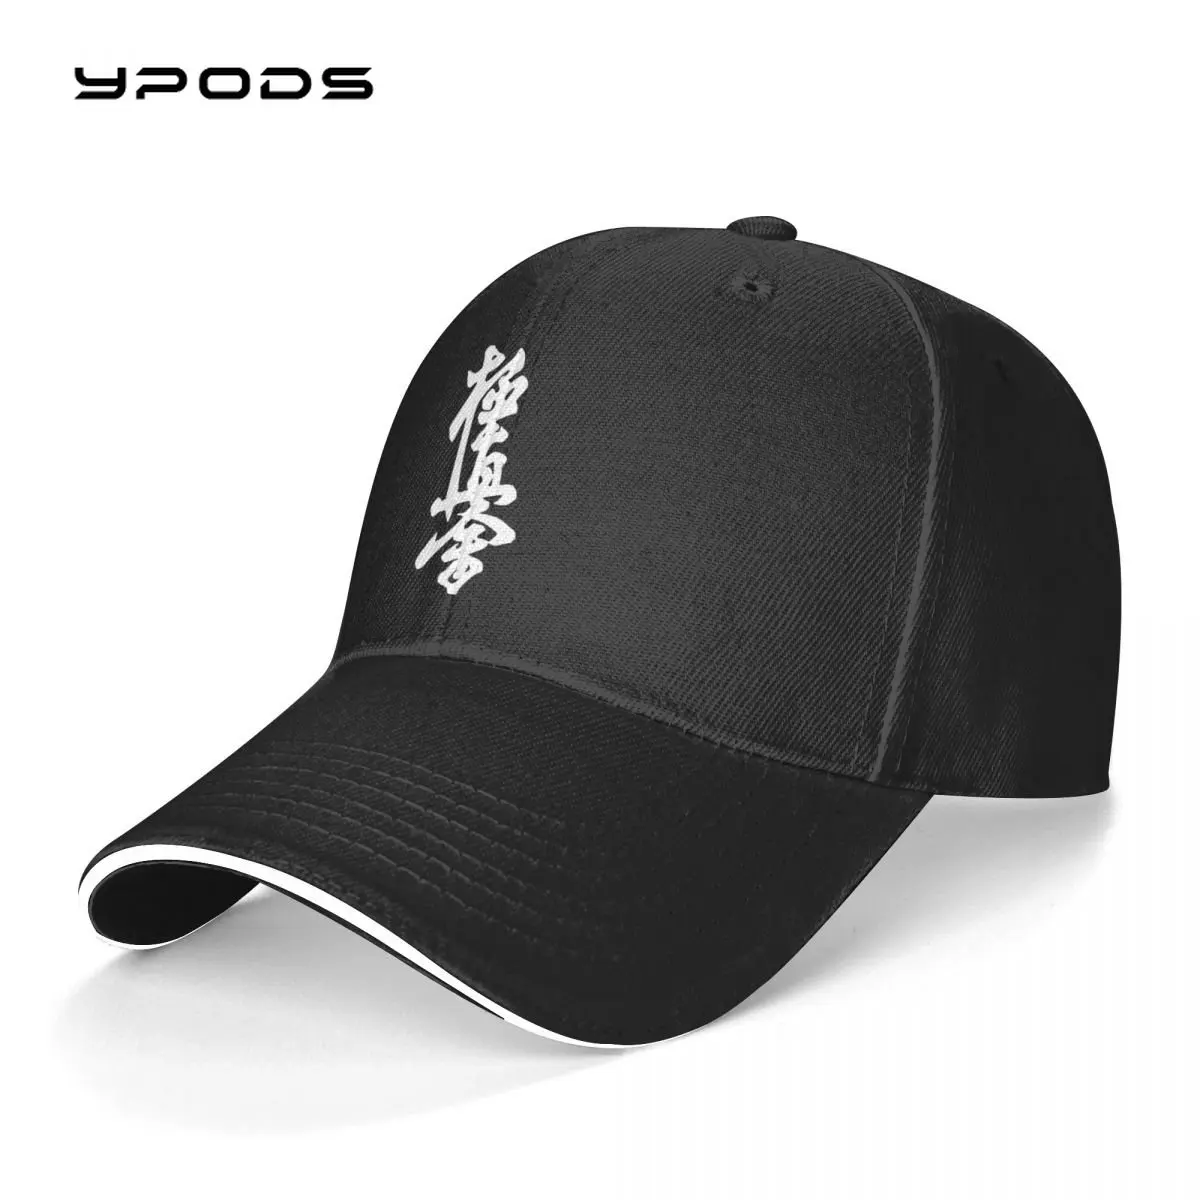 

Unisex Cotton Cap For Women Men Kyokushinkai Kan Kyokushin Karate Fashion Baseball Cap Adjustable Outdoor Streetwear Hat